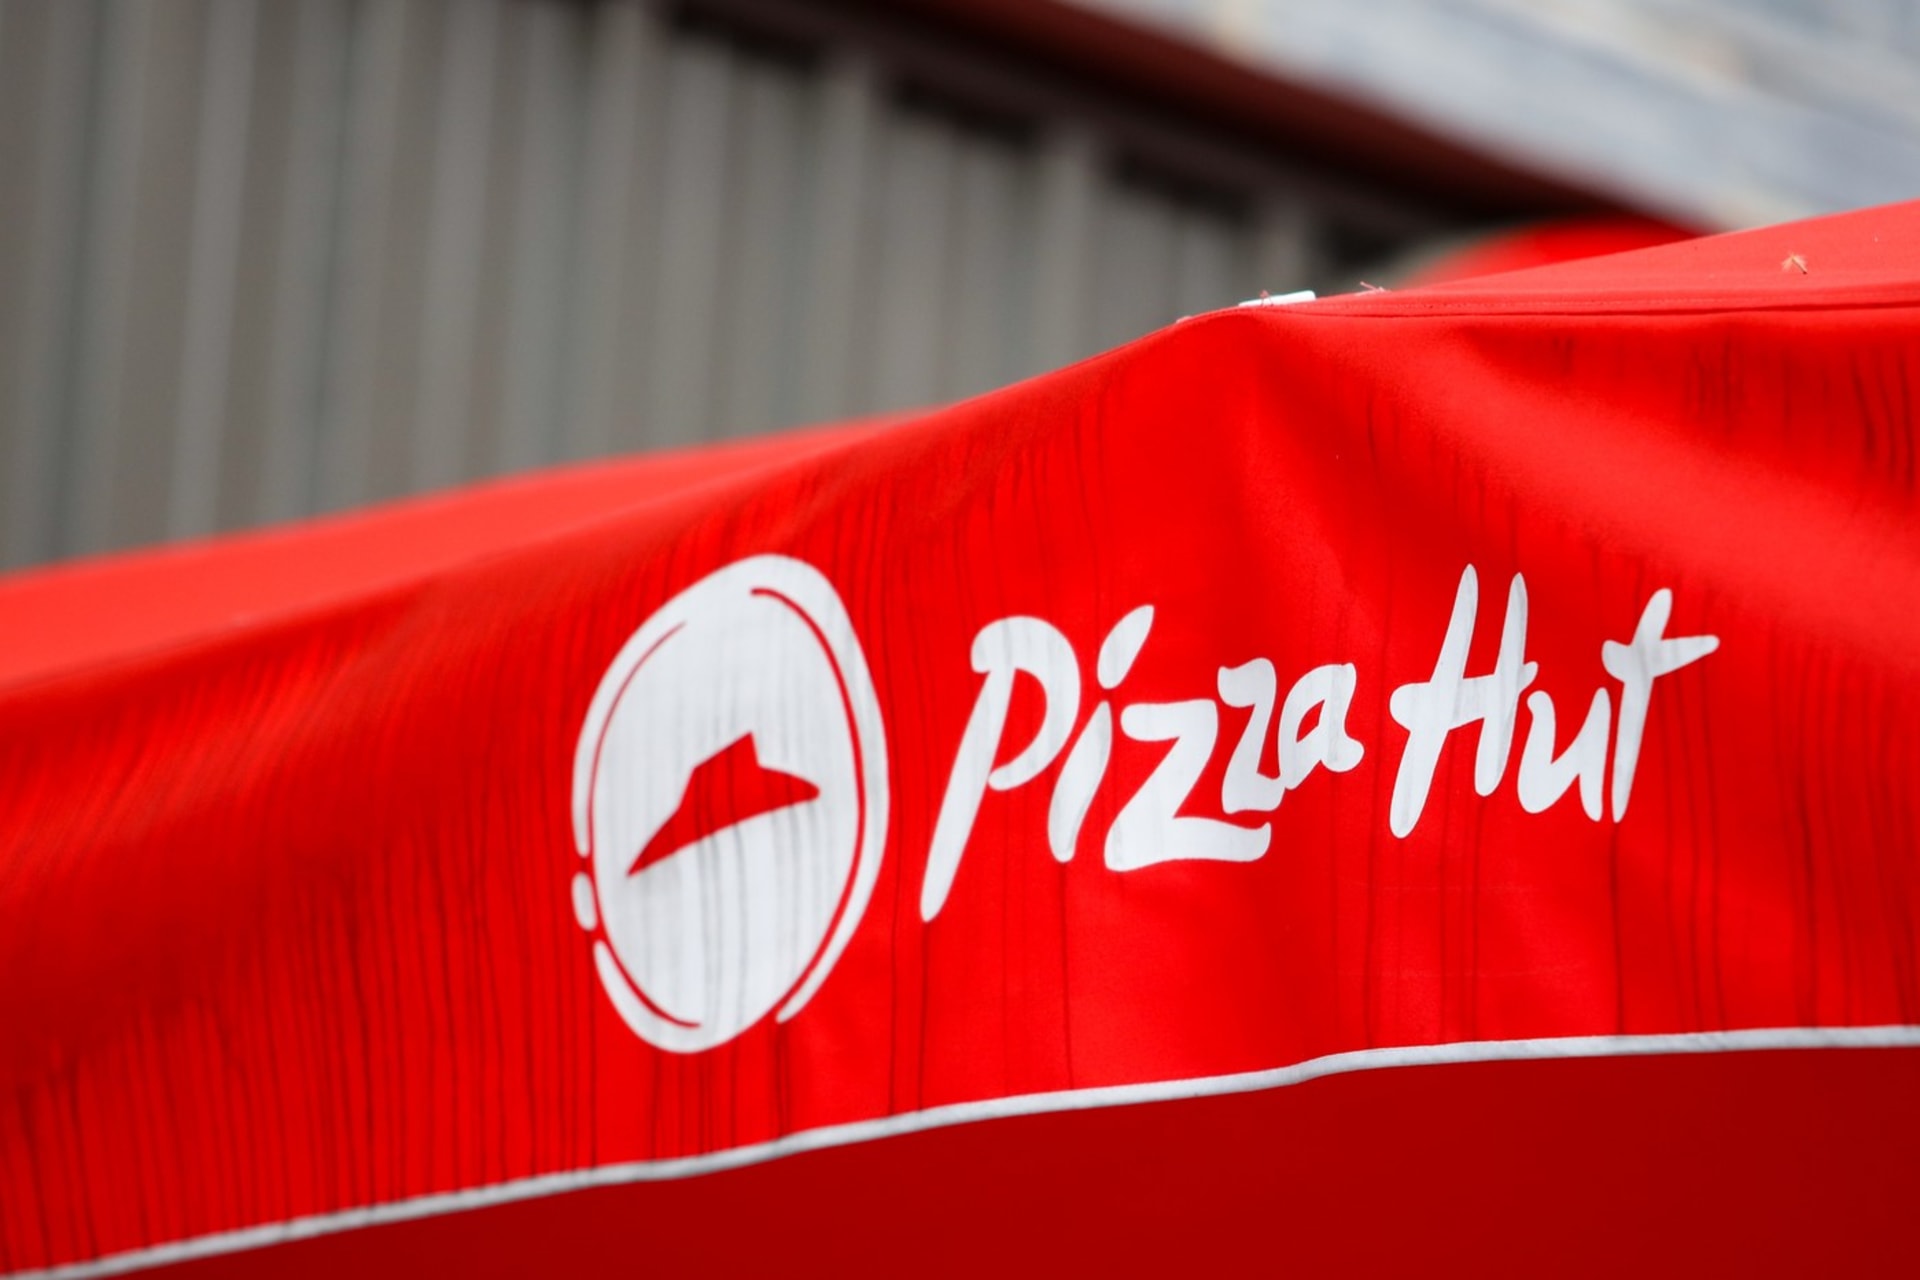 Nakonec Pizza Hut zůstává jediným důkazem vzájemné domluvy Pepsi a Sovětského svazu